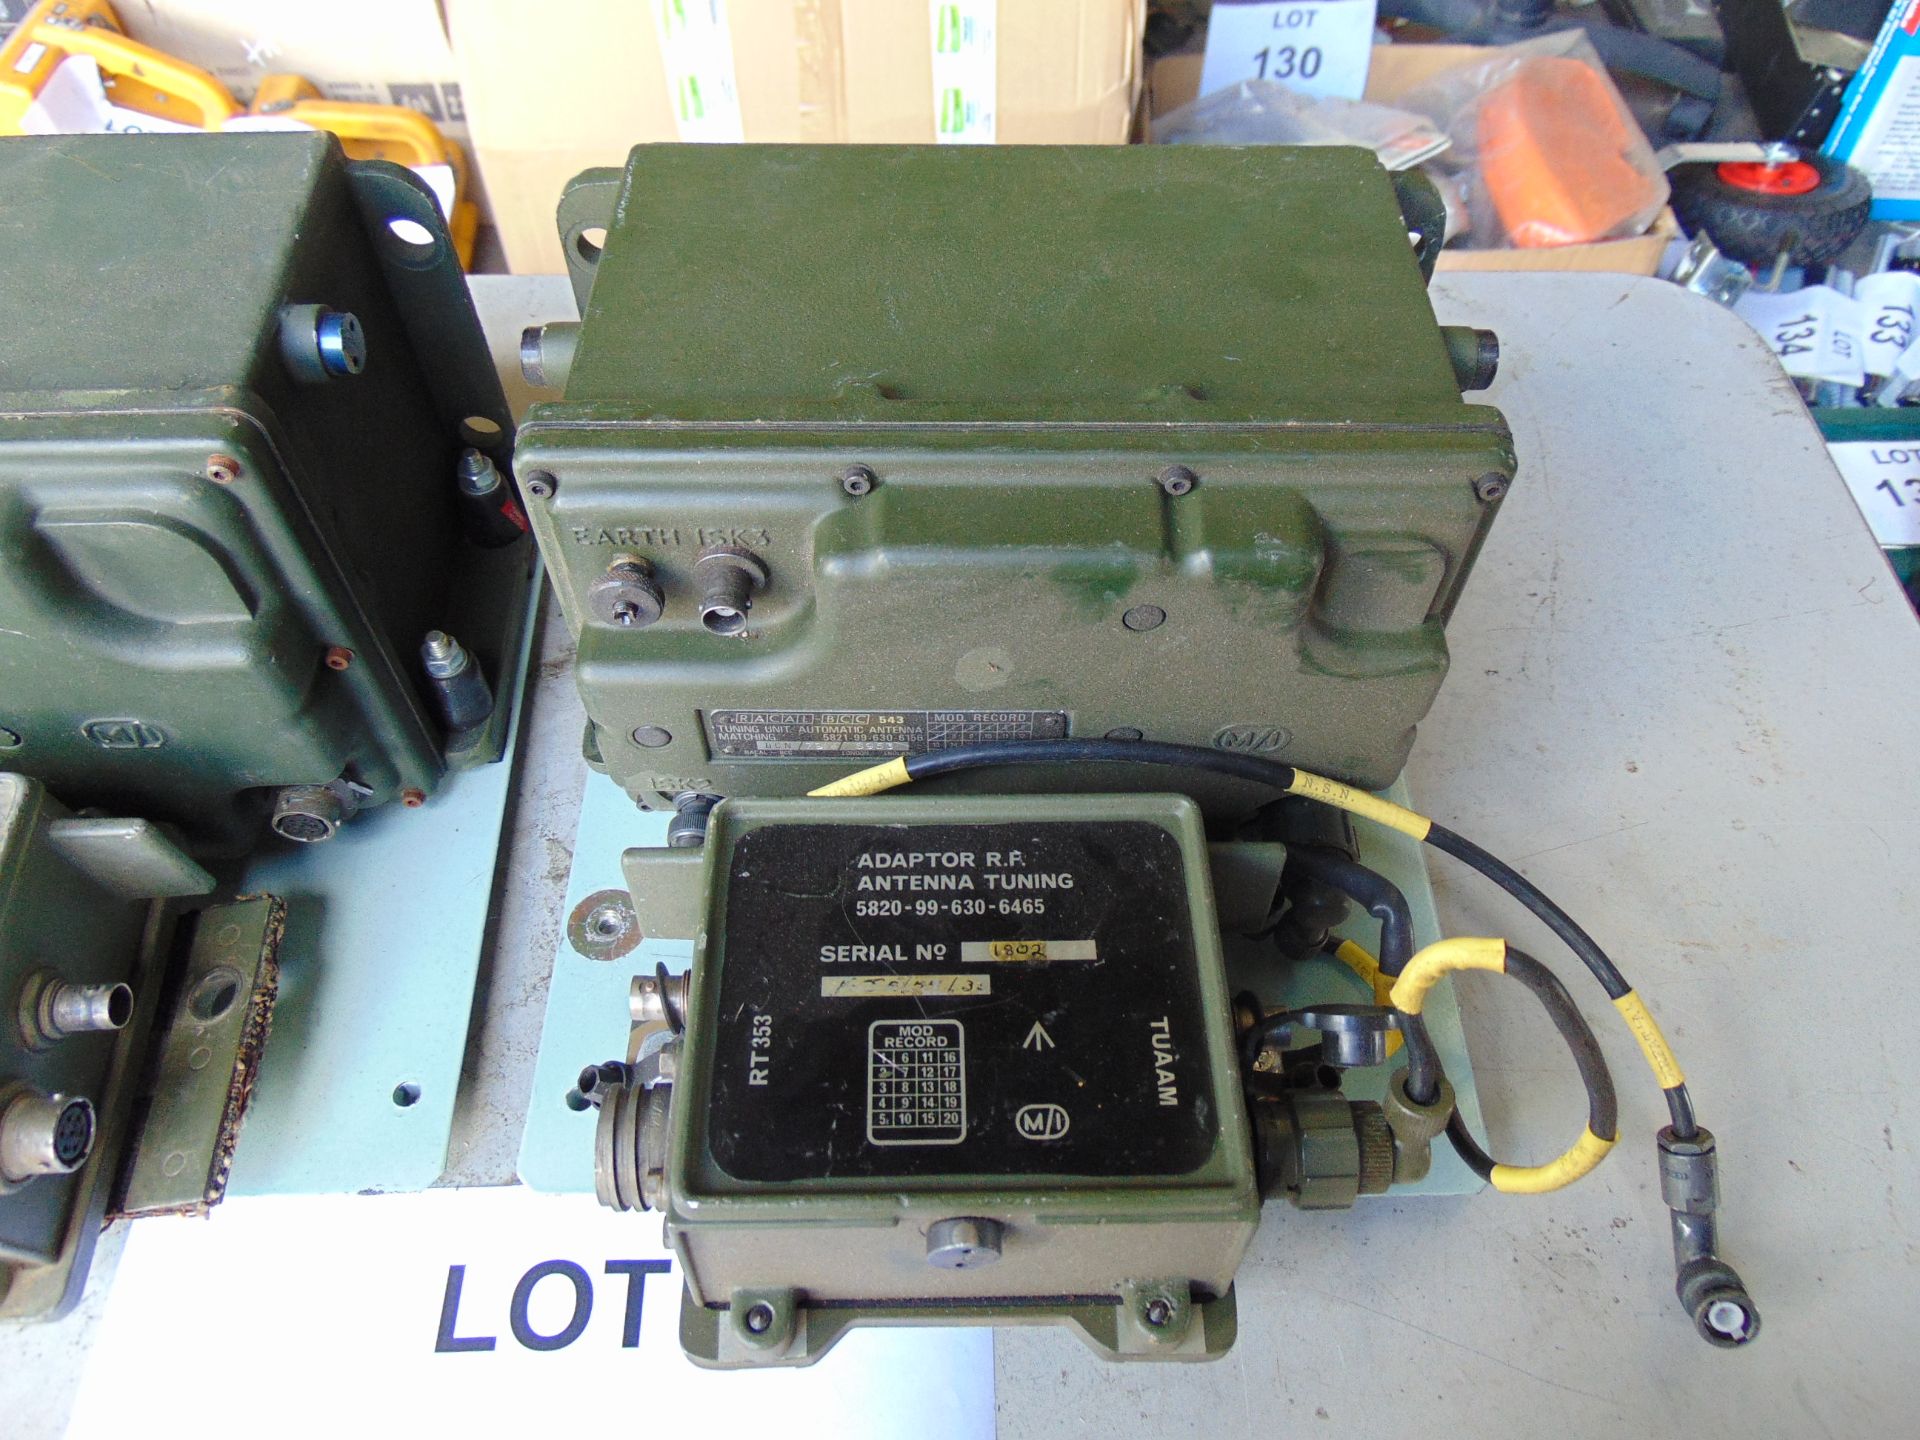 2 x Clansman Antenna Tuning unit with vehicle bracket - Image 2 of 5